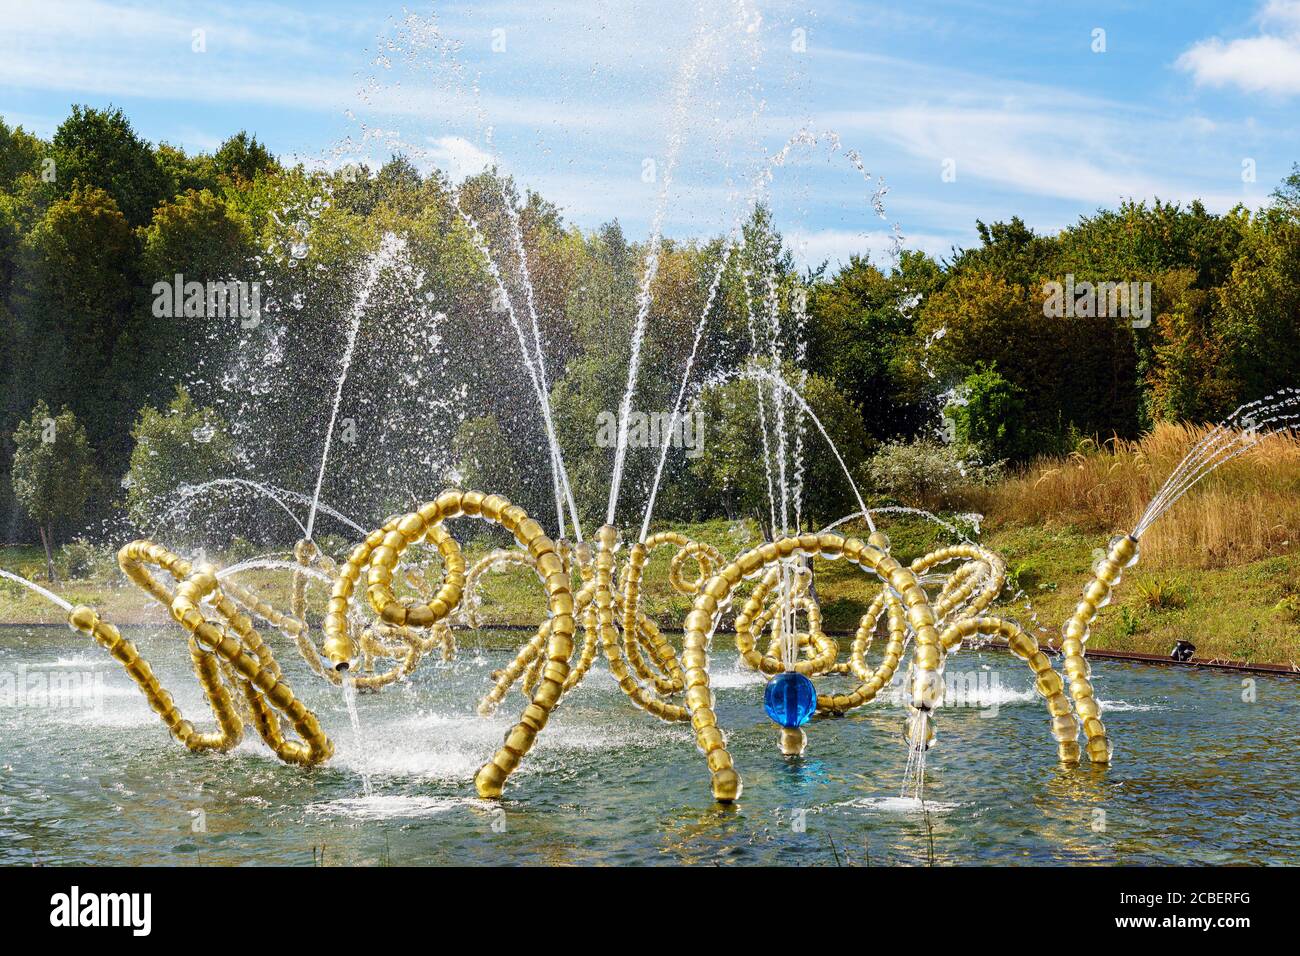 Le parc aquatique dans les jardins de Versailles - France Banque D'Images